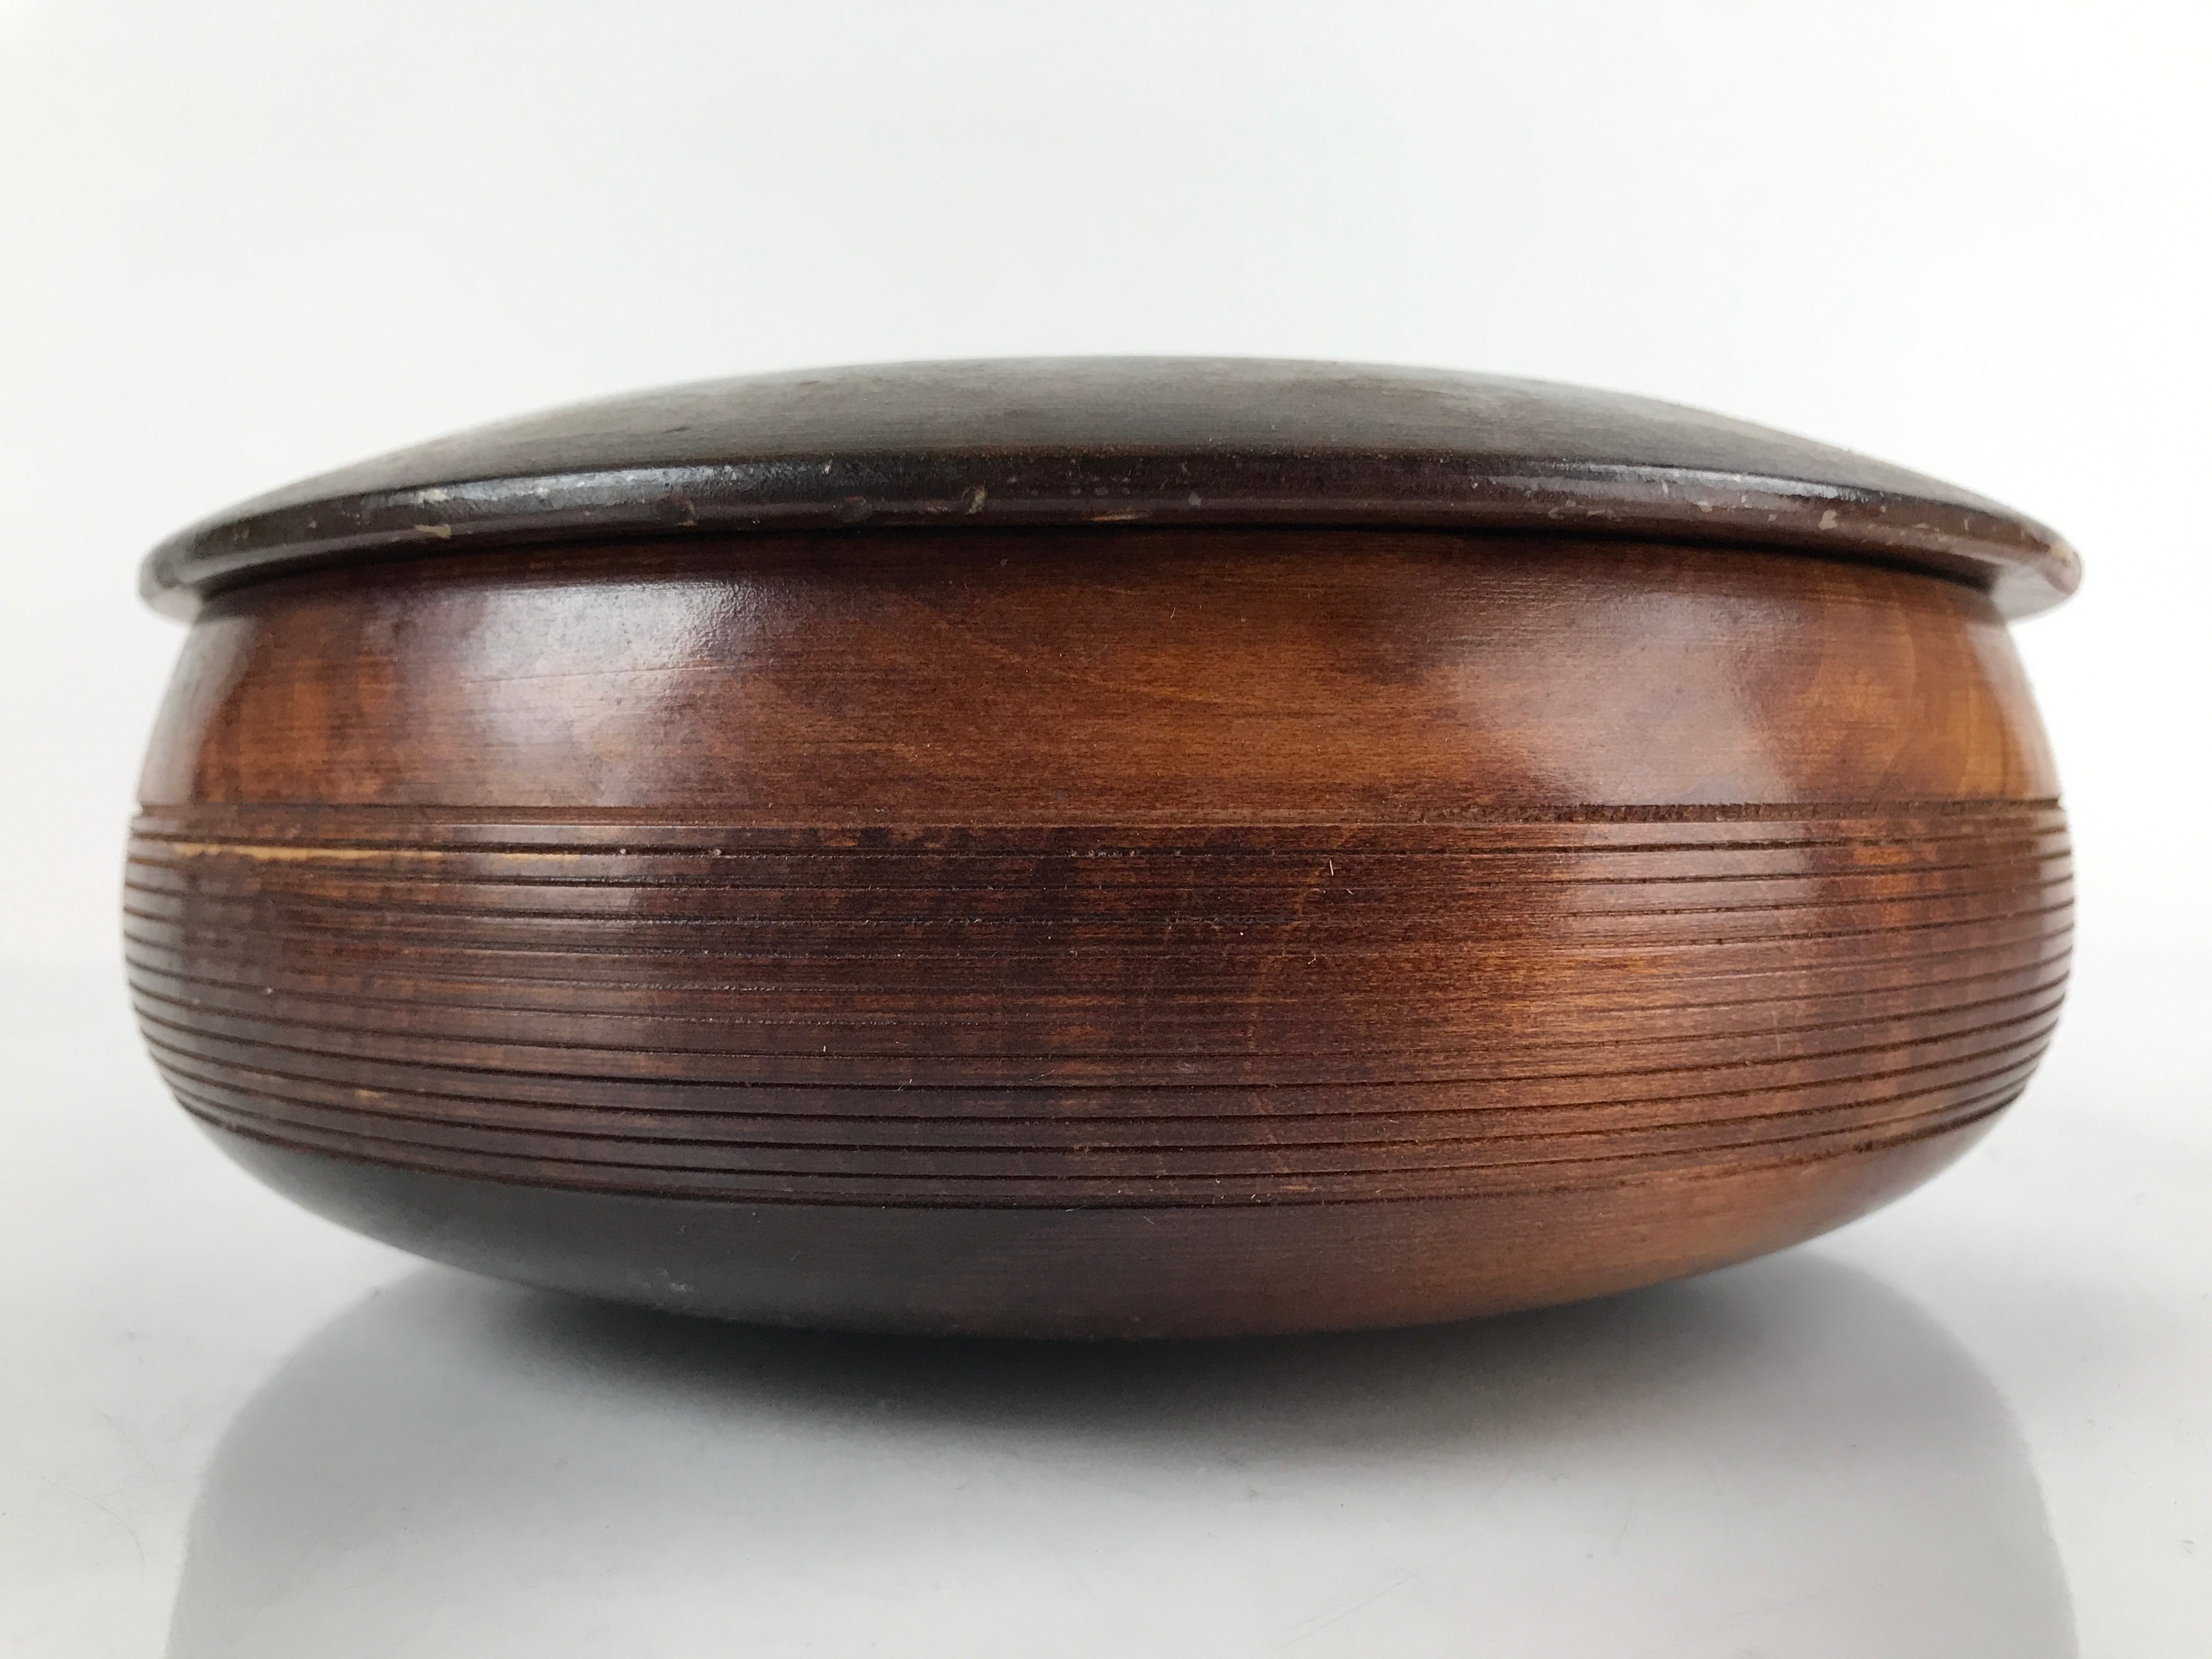 Japanese Brushed Lacquer Wooden Lidded Bowl Kashiki Vtg Tea Ceremony Lines L253